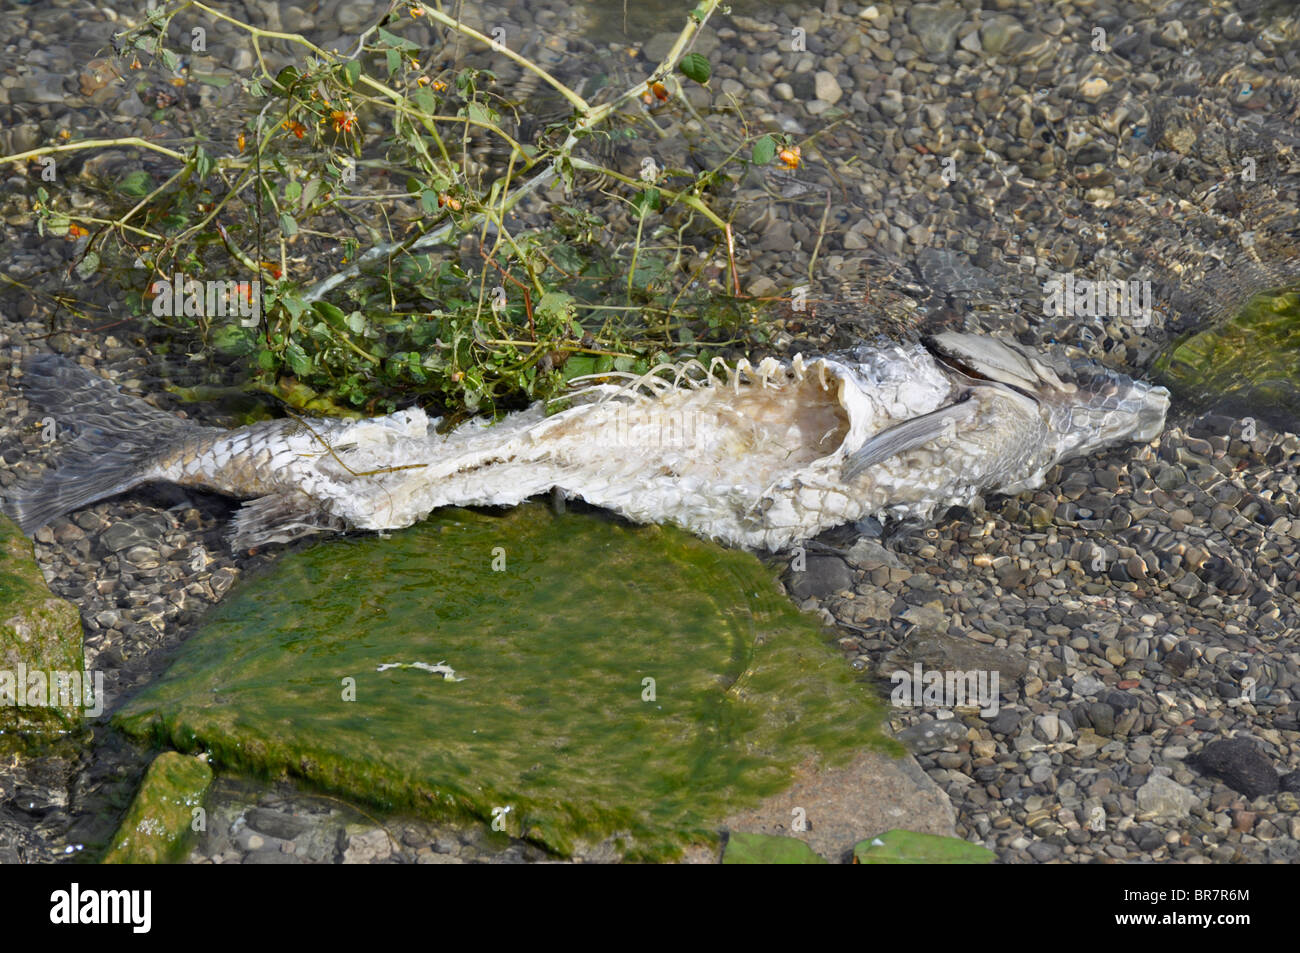 Fish Carcass at the Lake Shore Stock Photo